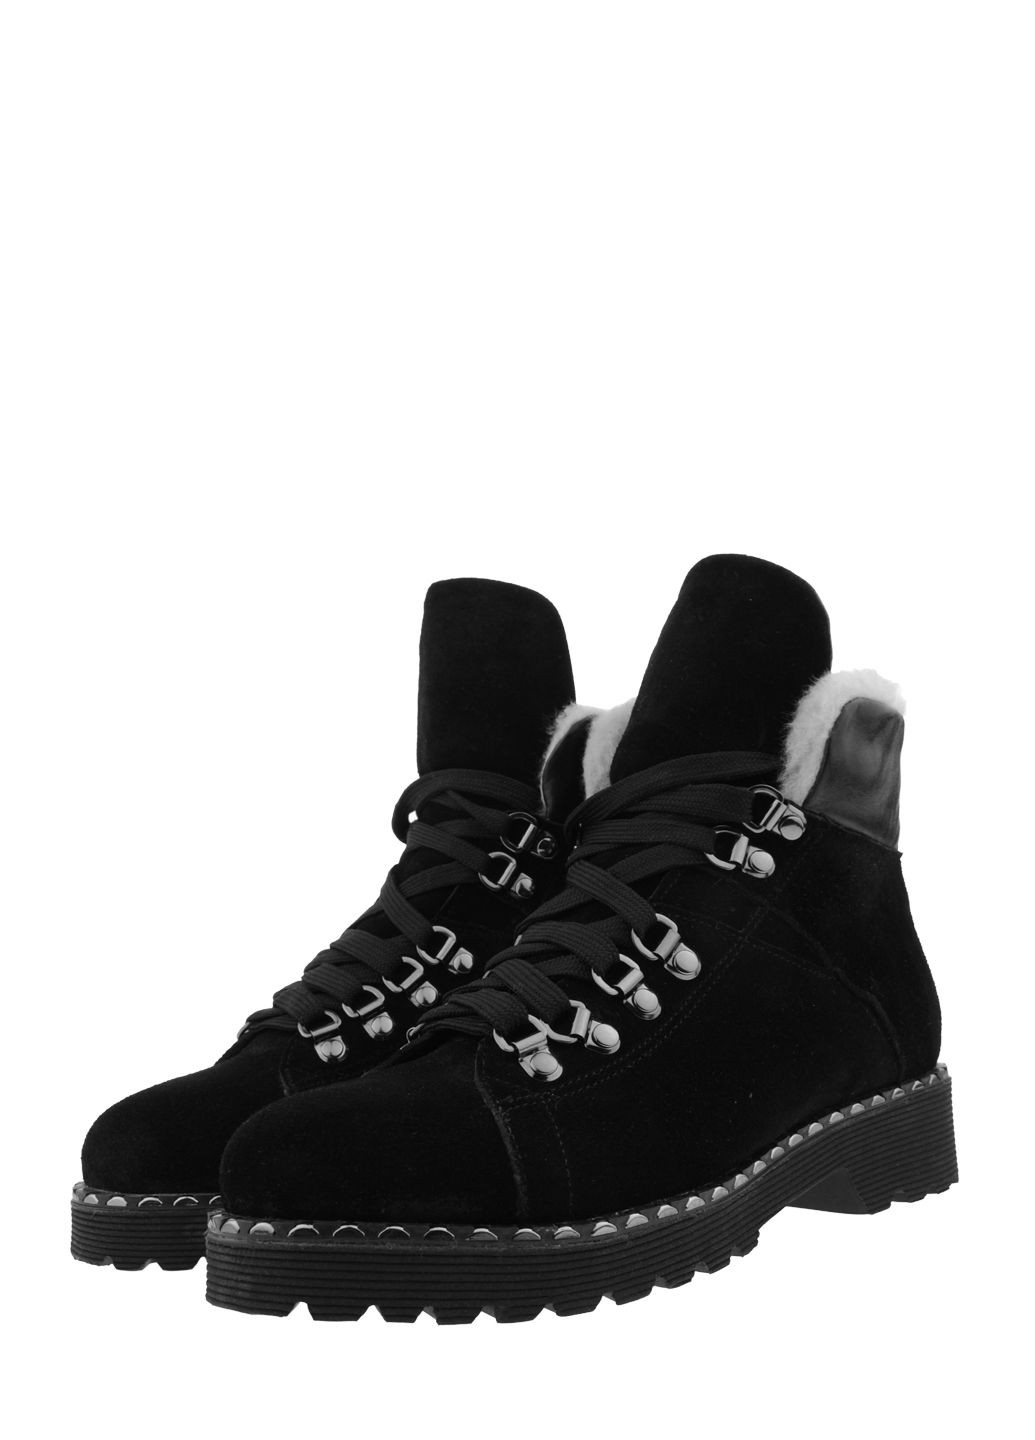 Зимние ботинки a&b r160-7-11 черный A & B из натуральной замши